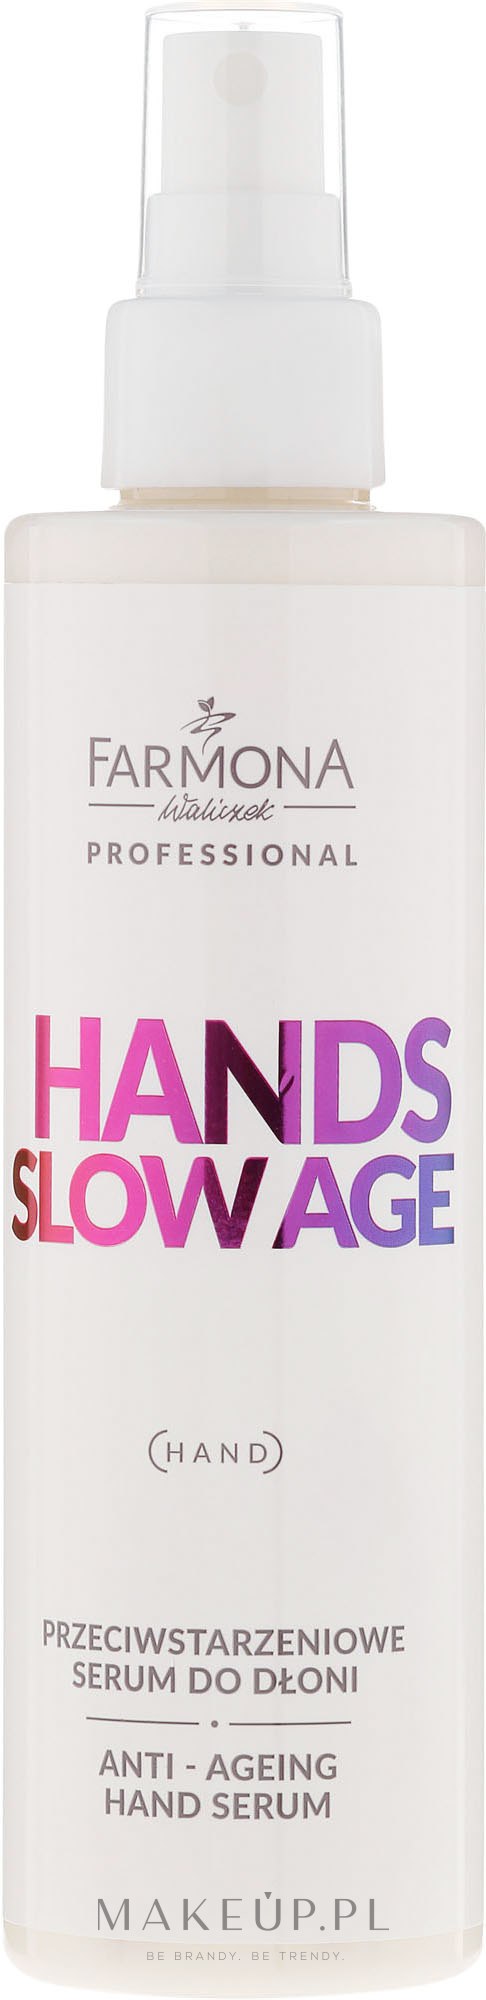 Przeciwstarzeniowe serum do dłoni - Farmona Professional Hands Slow Age — Zdjęcie 200 ml